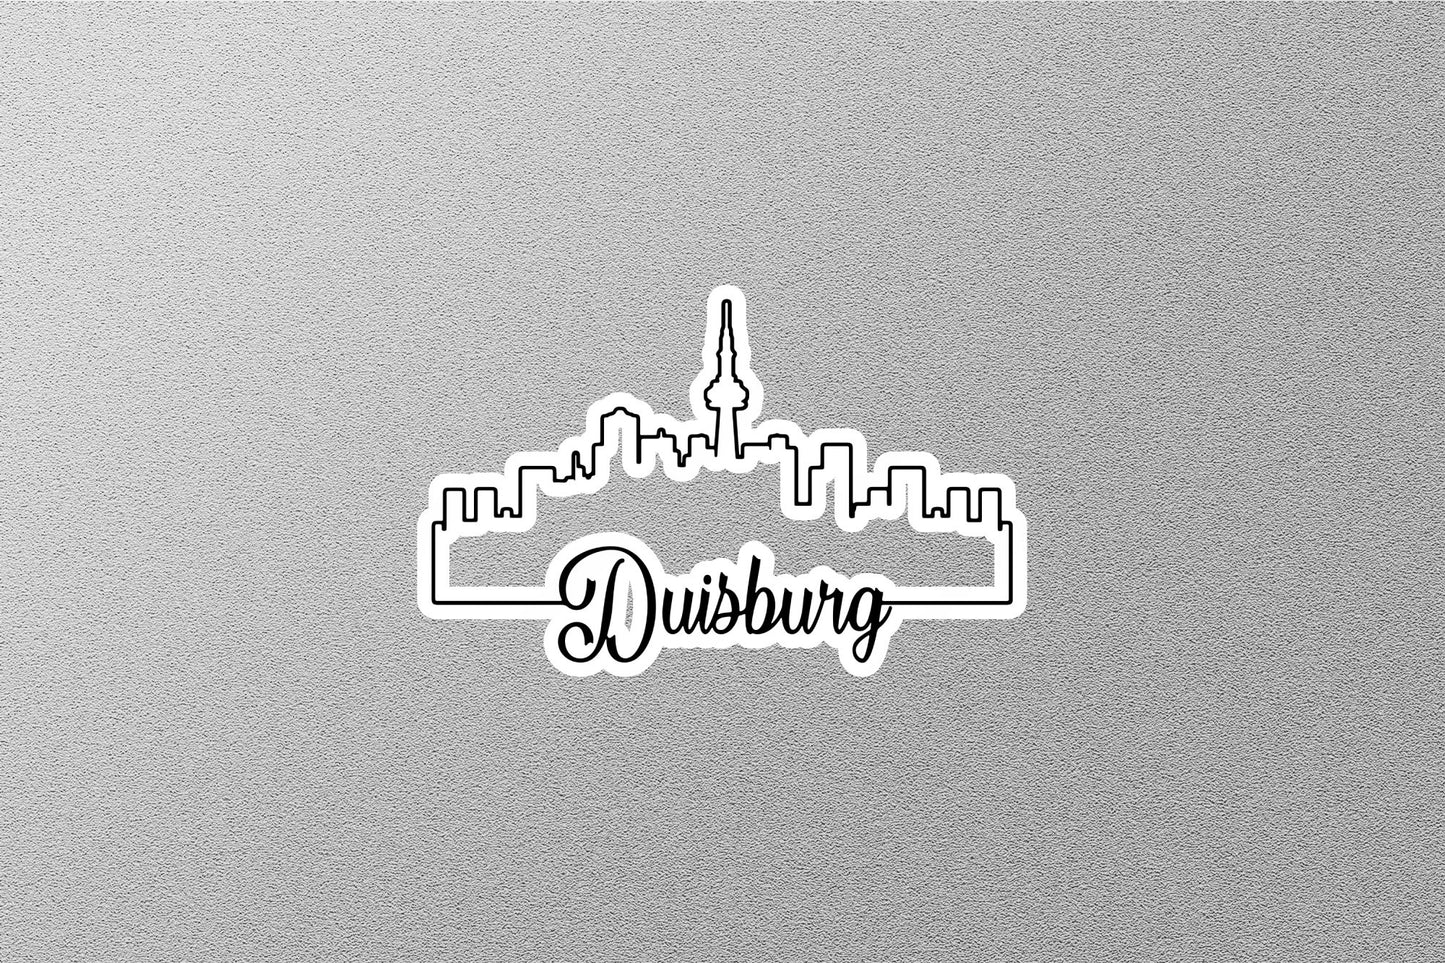 Duisburg Skyline Sticker